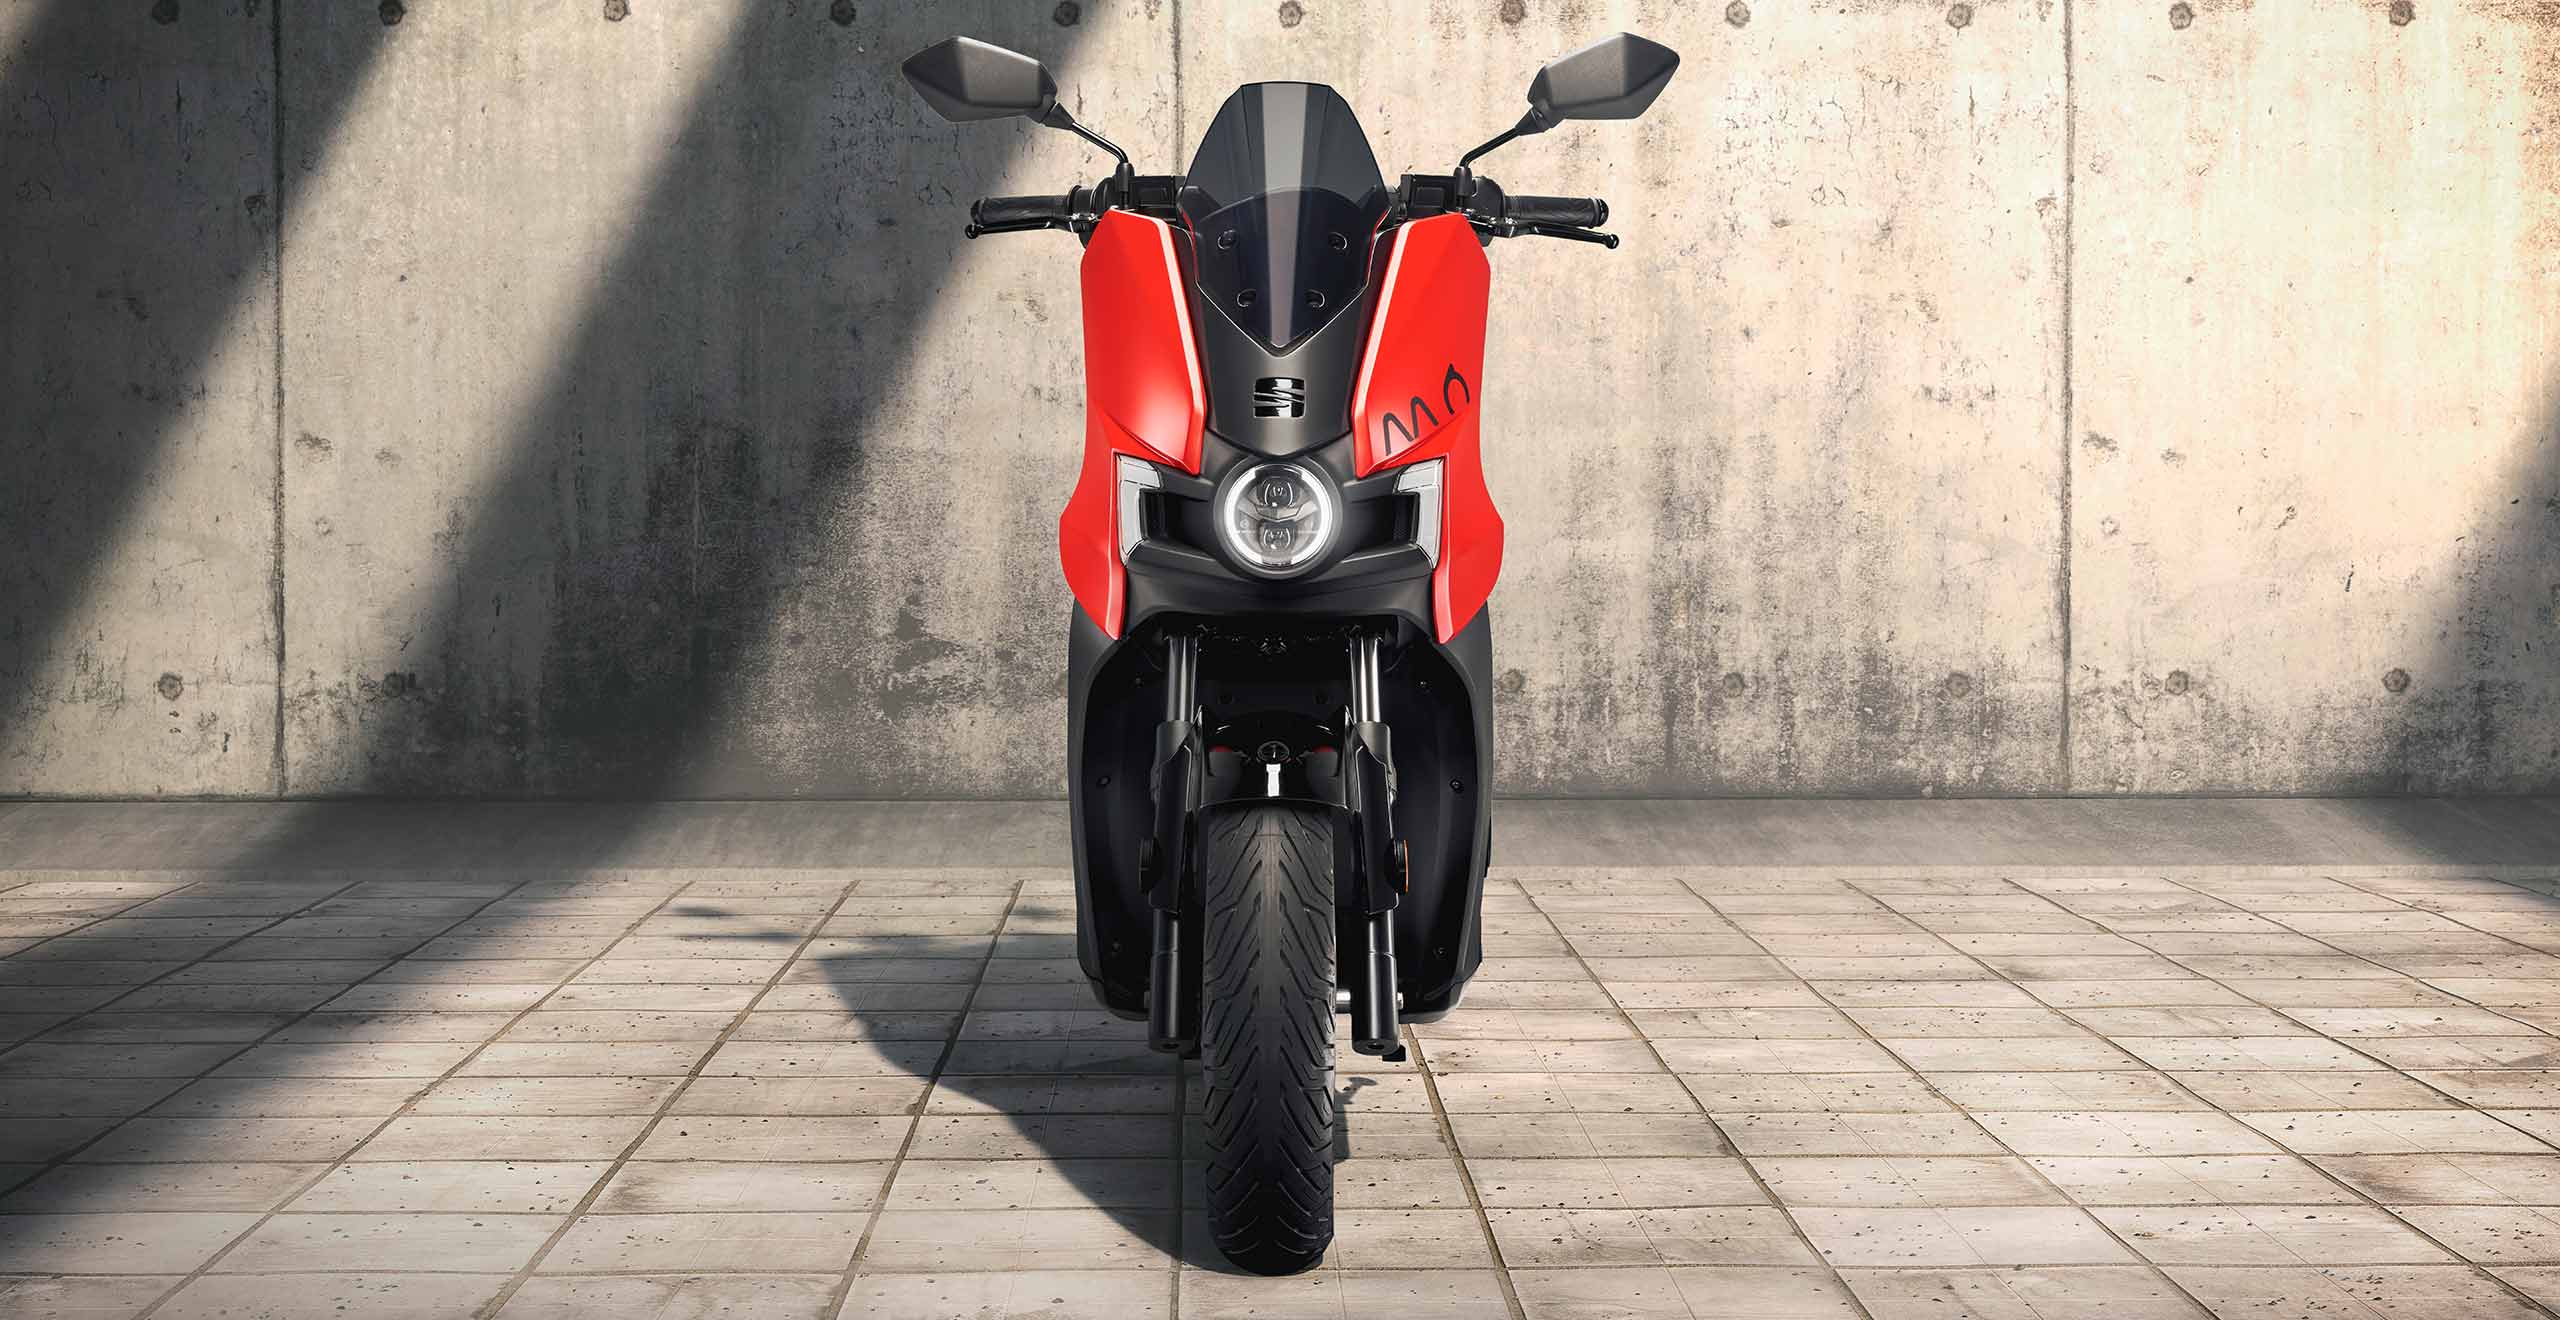 Motociclo elettrico SEAT MÓ eScooter 125, vista frontale